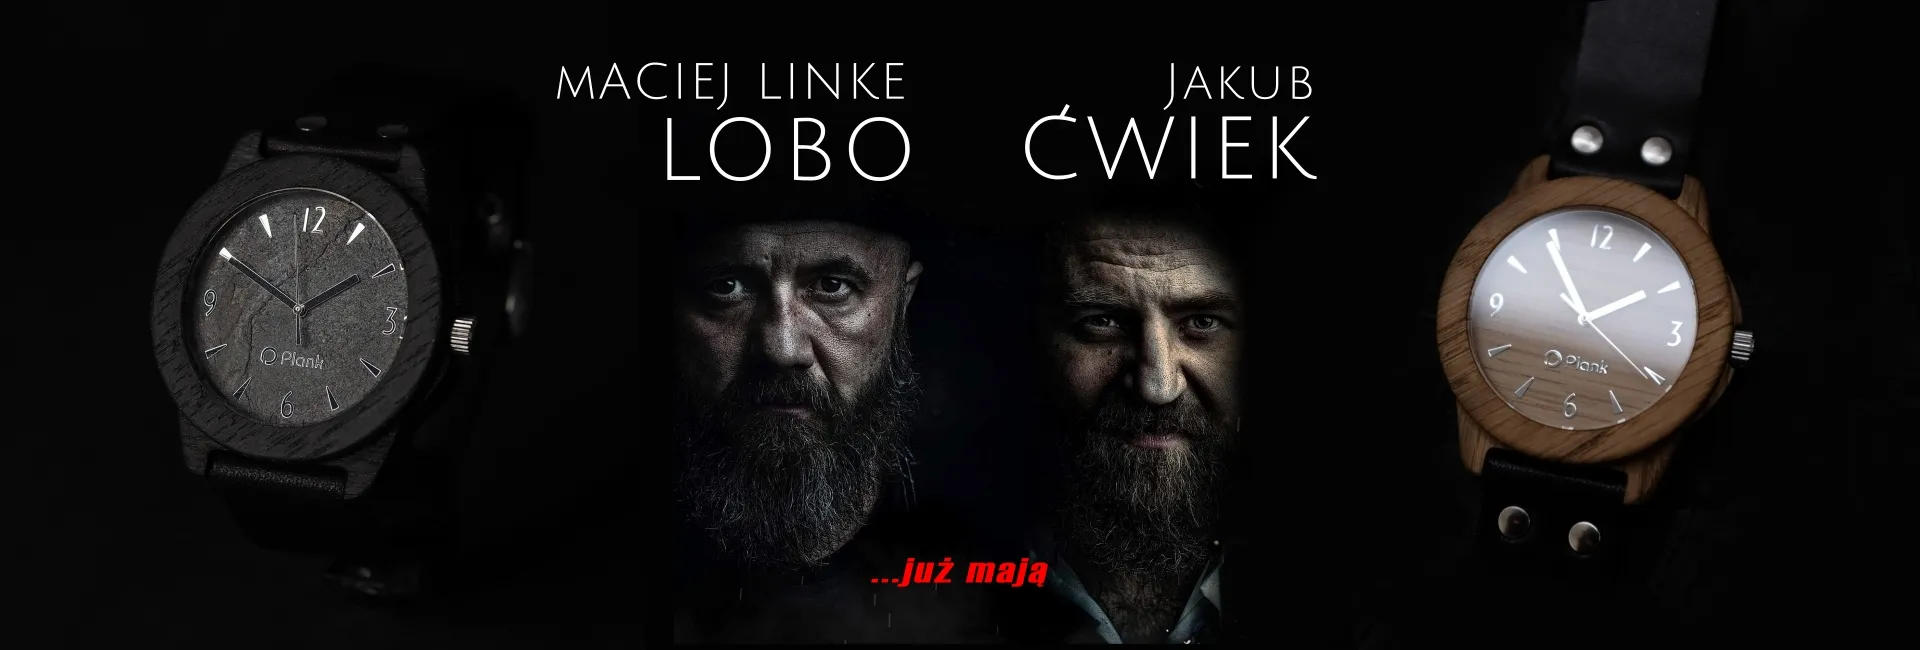 Maciej Linke Lobo i Jakub Ćwiek wybrali męskie zegarki drewniane